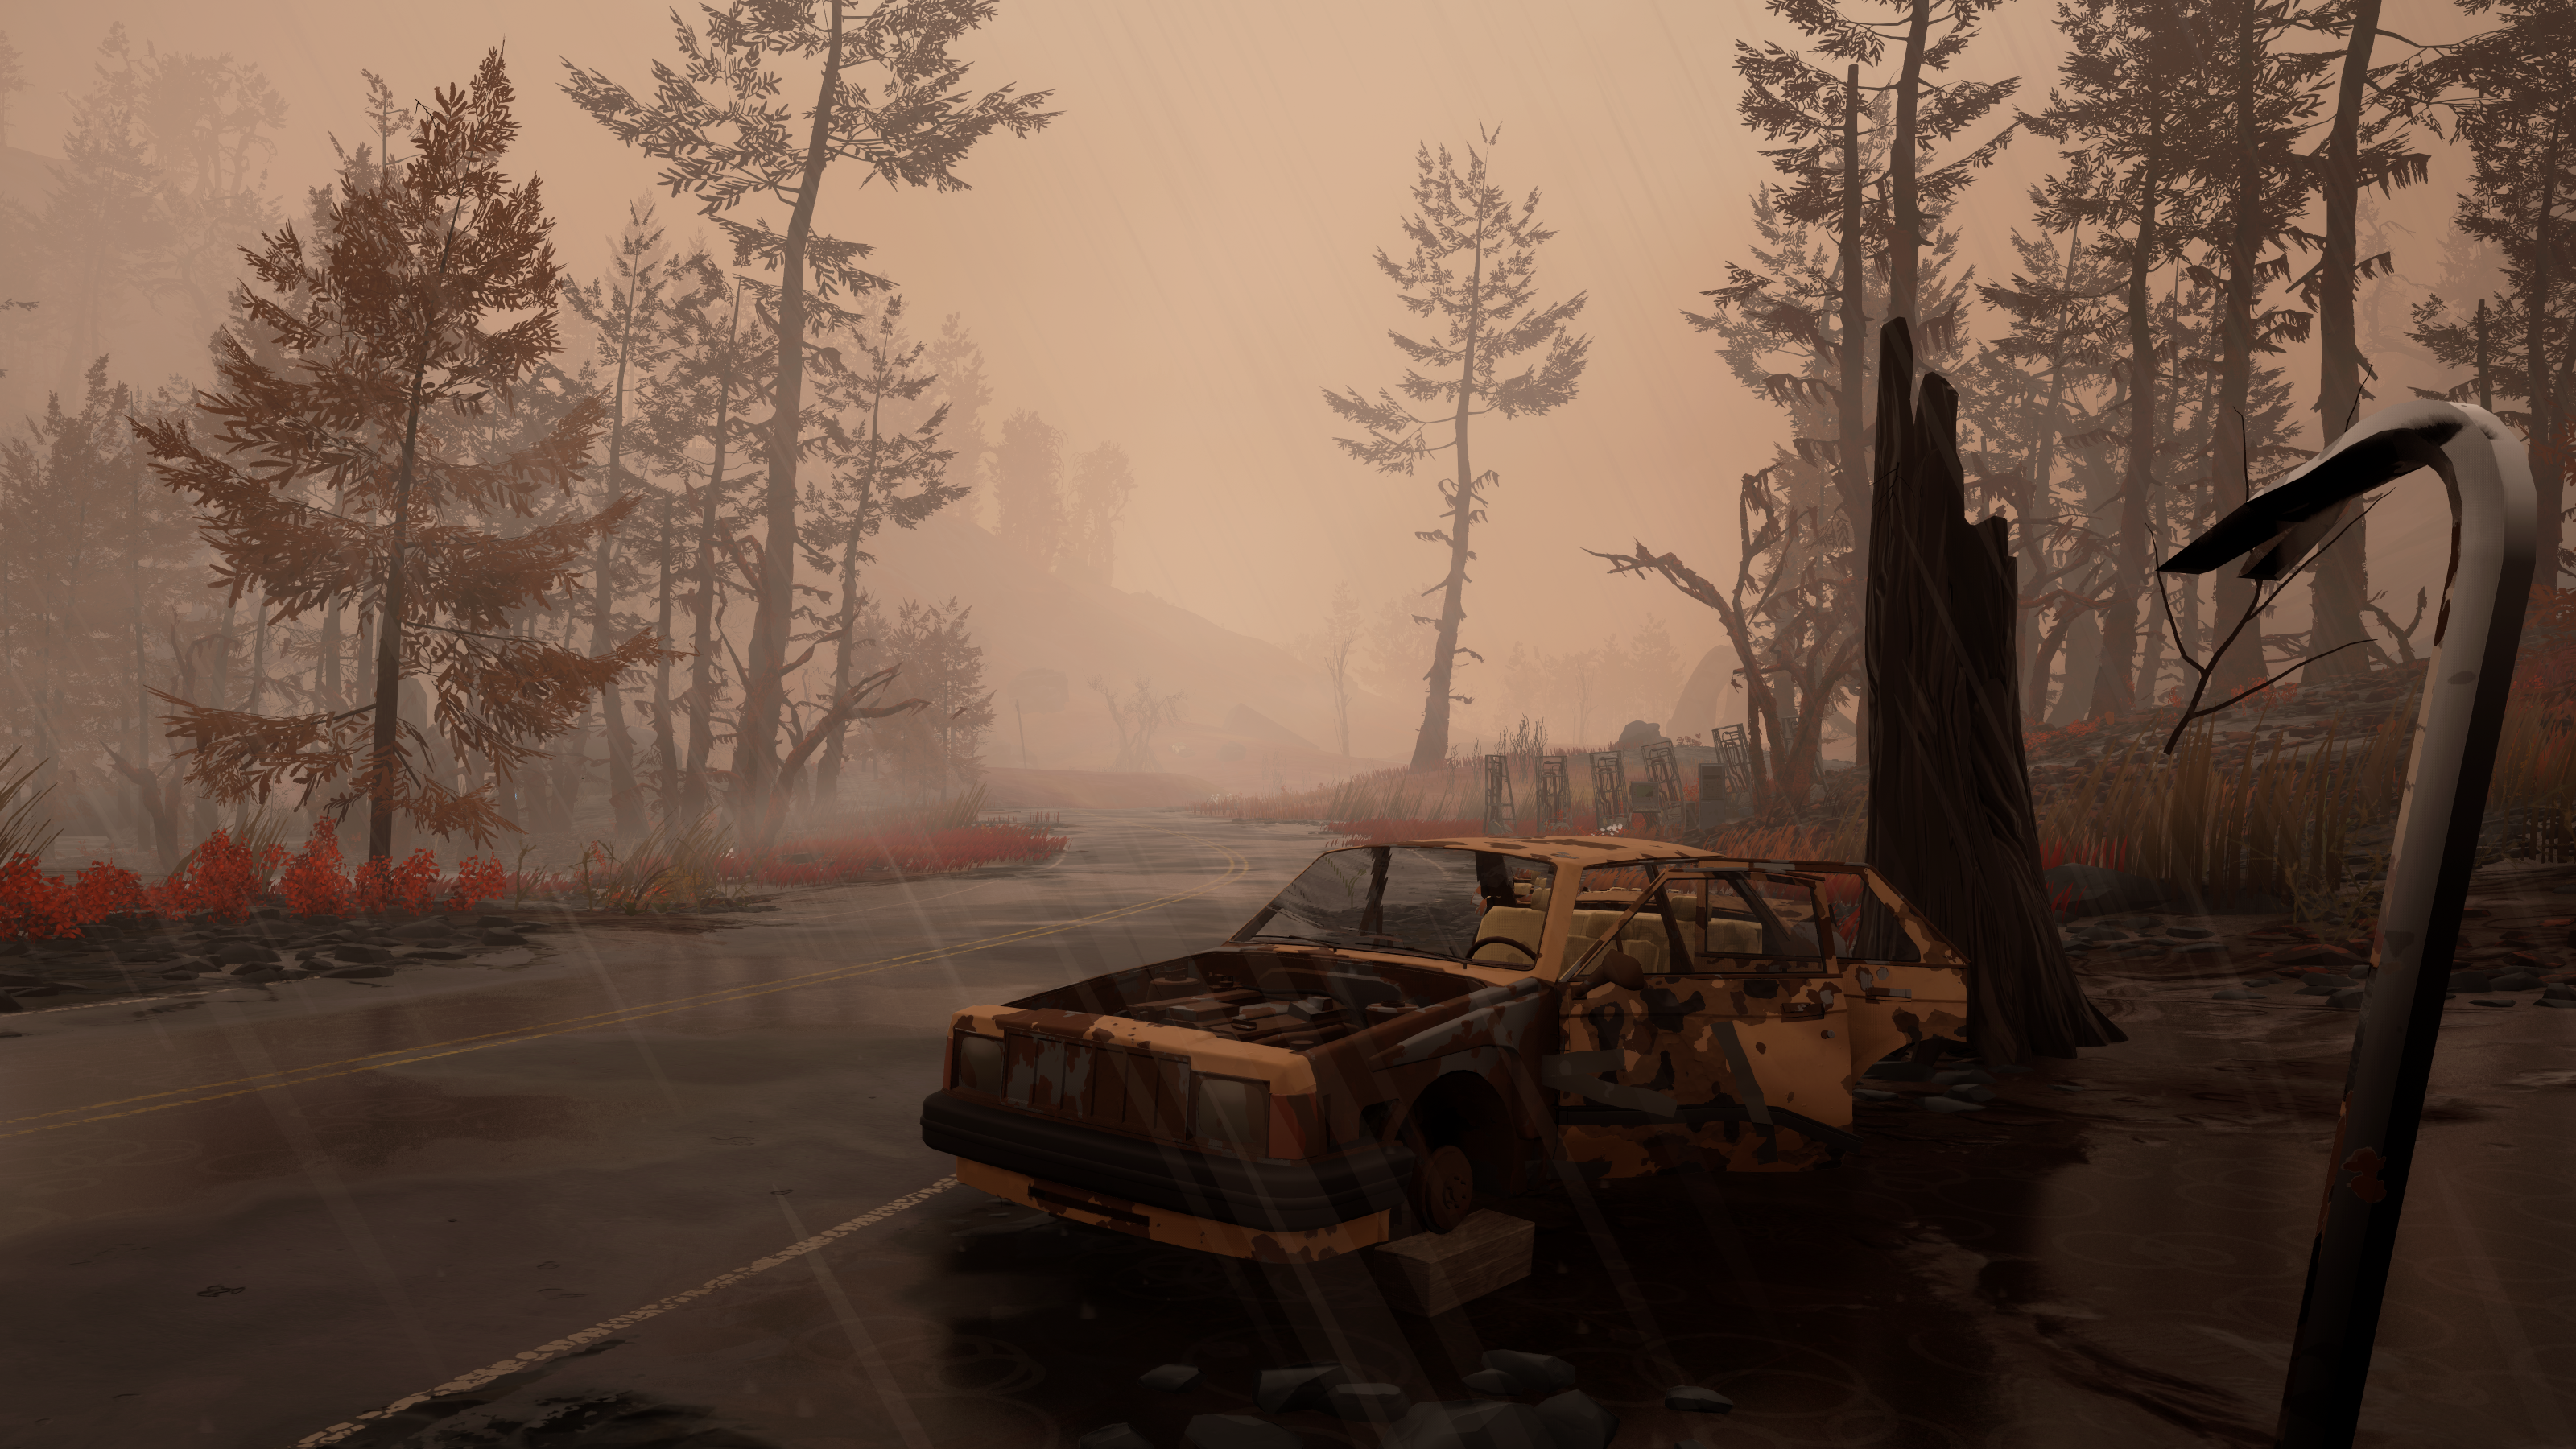 Anteprima di Pacific Drive - un'auto abbandonata in prossimità della strada in una foschia marrone, il giocatore tiene in mano un piede di porco in prima persona